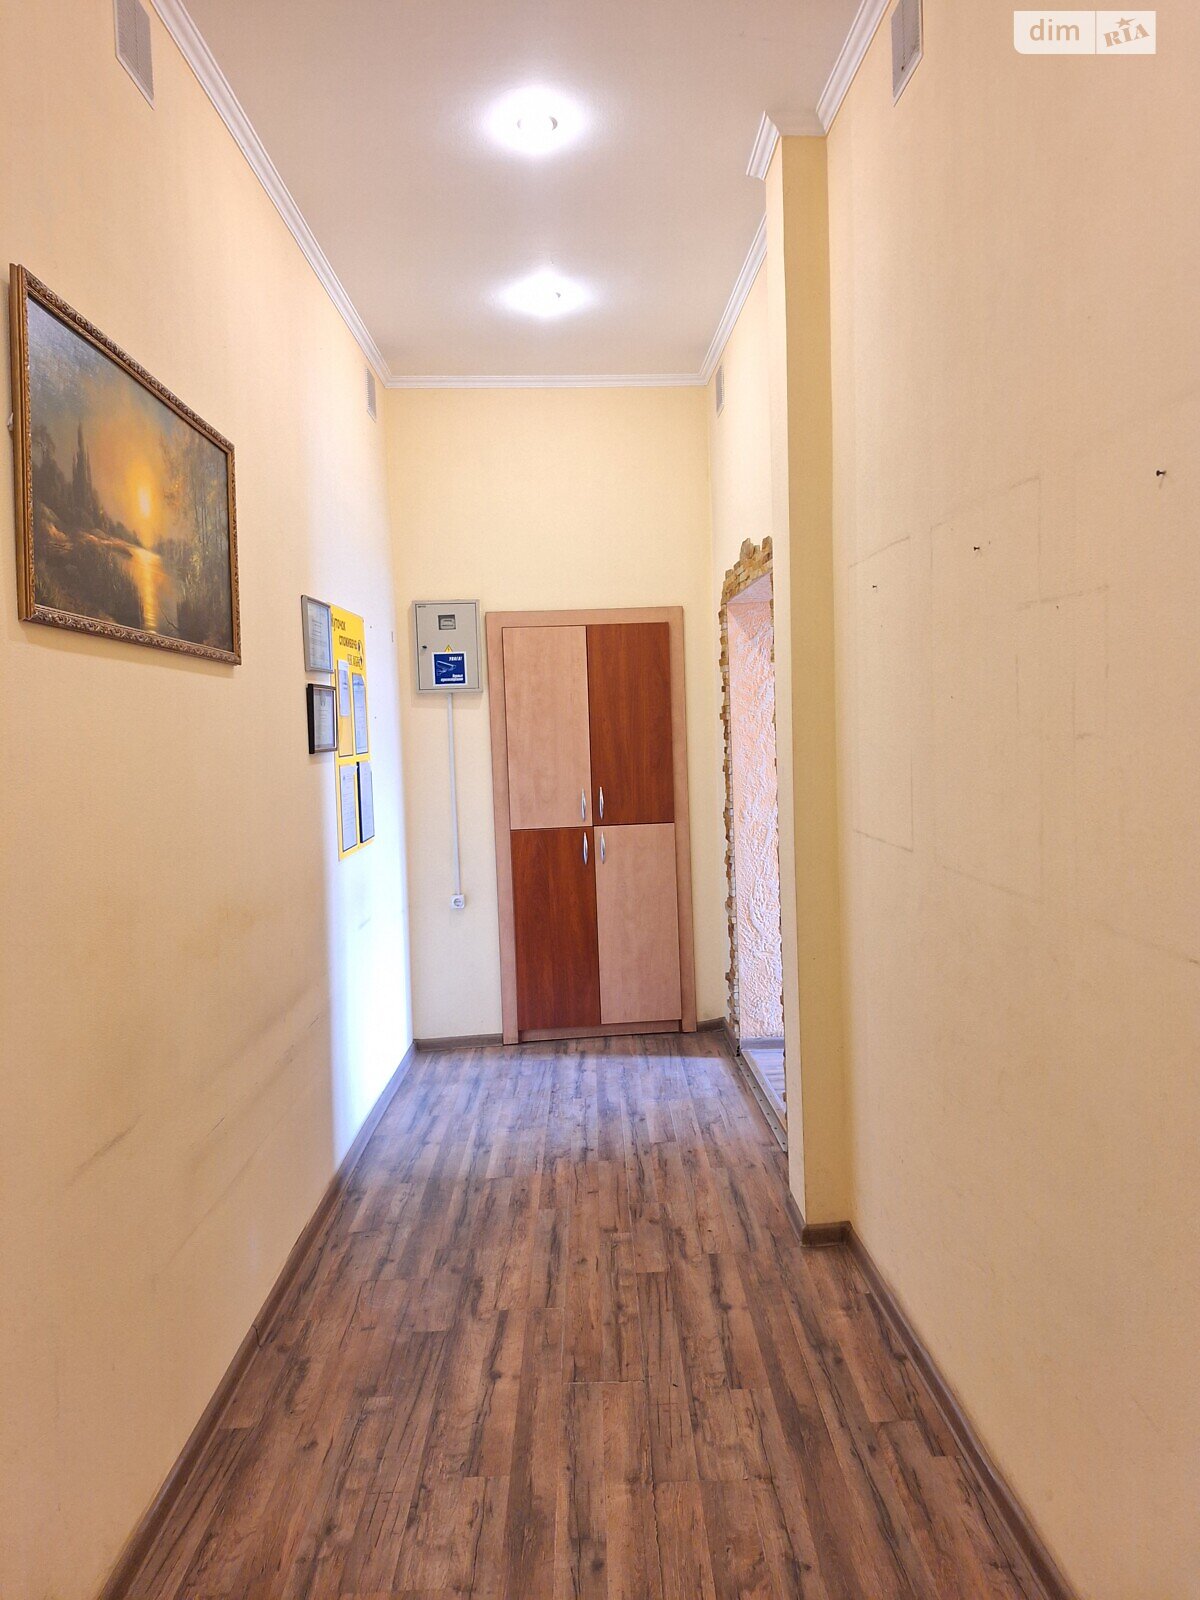 Оренда офісного приміщення в Вінниці, Миколи Оводова вулиця, приміщень - 6, поверх - 2 фото 1